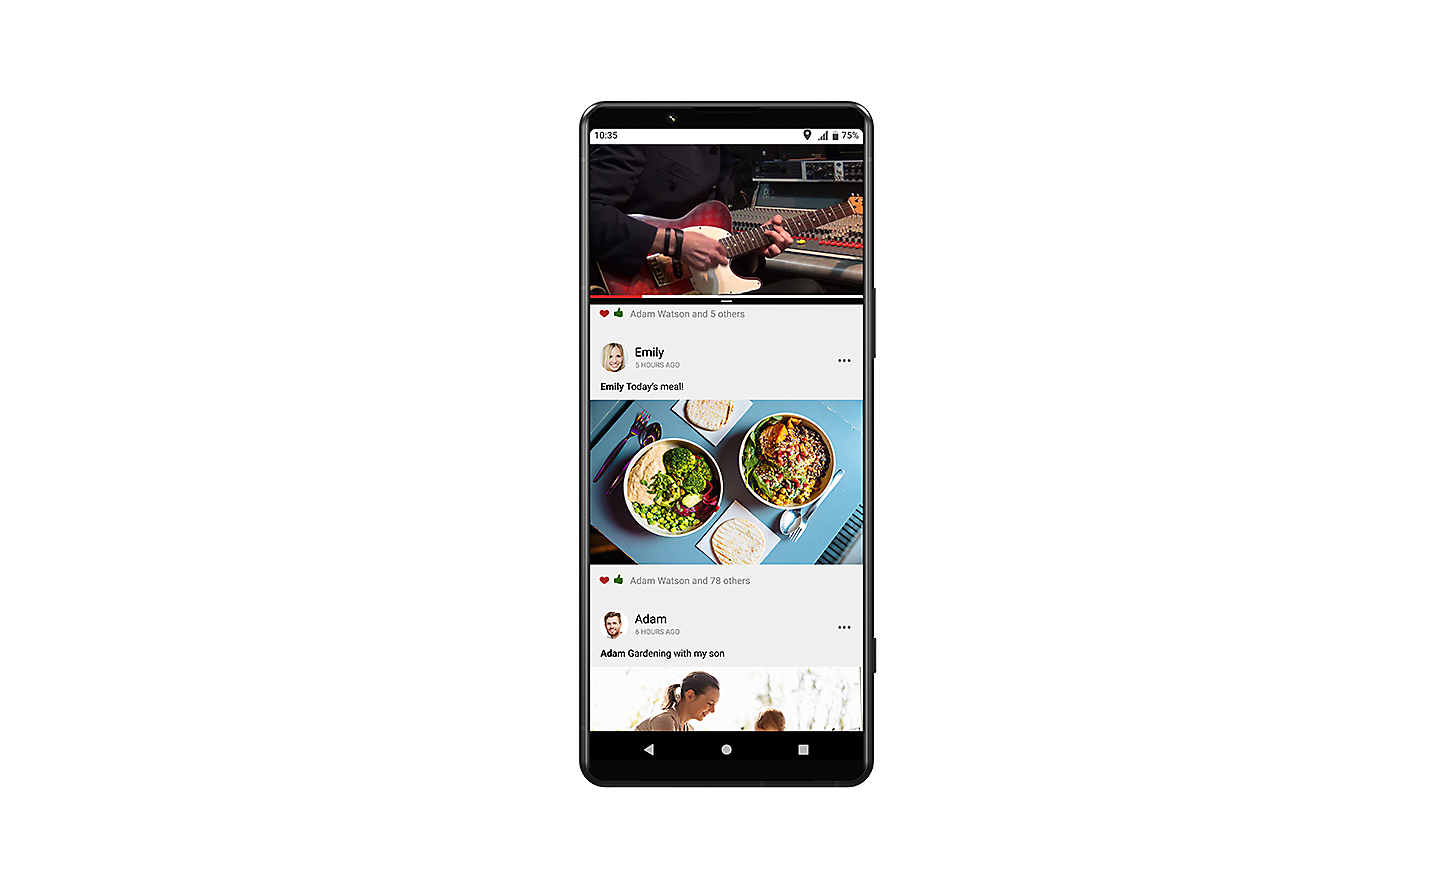 Smartphone Xperia che mostra l'interfaccia utente con una finestra pop-up